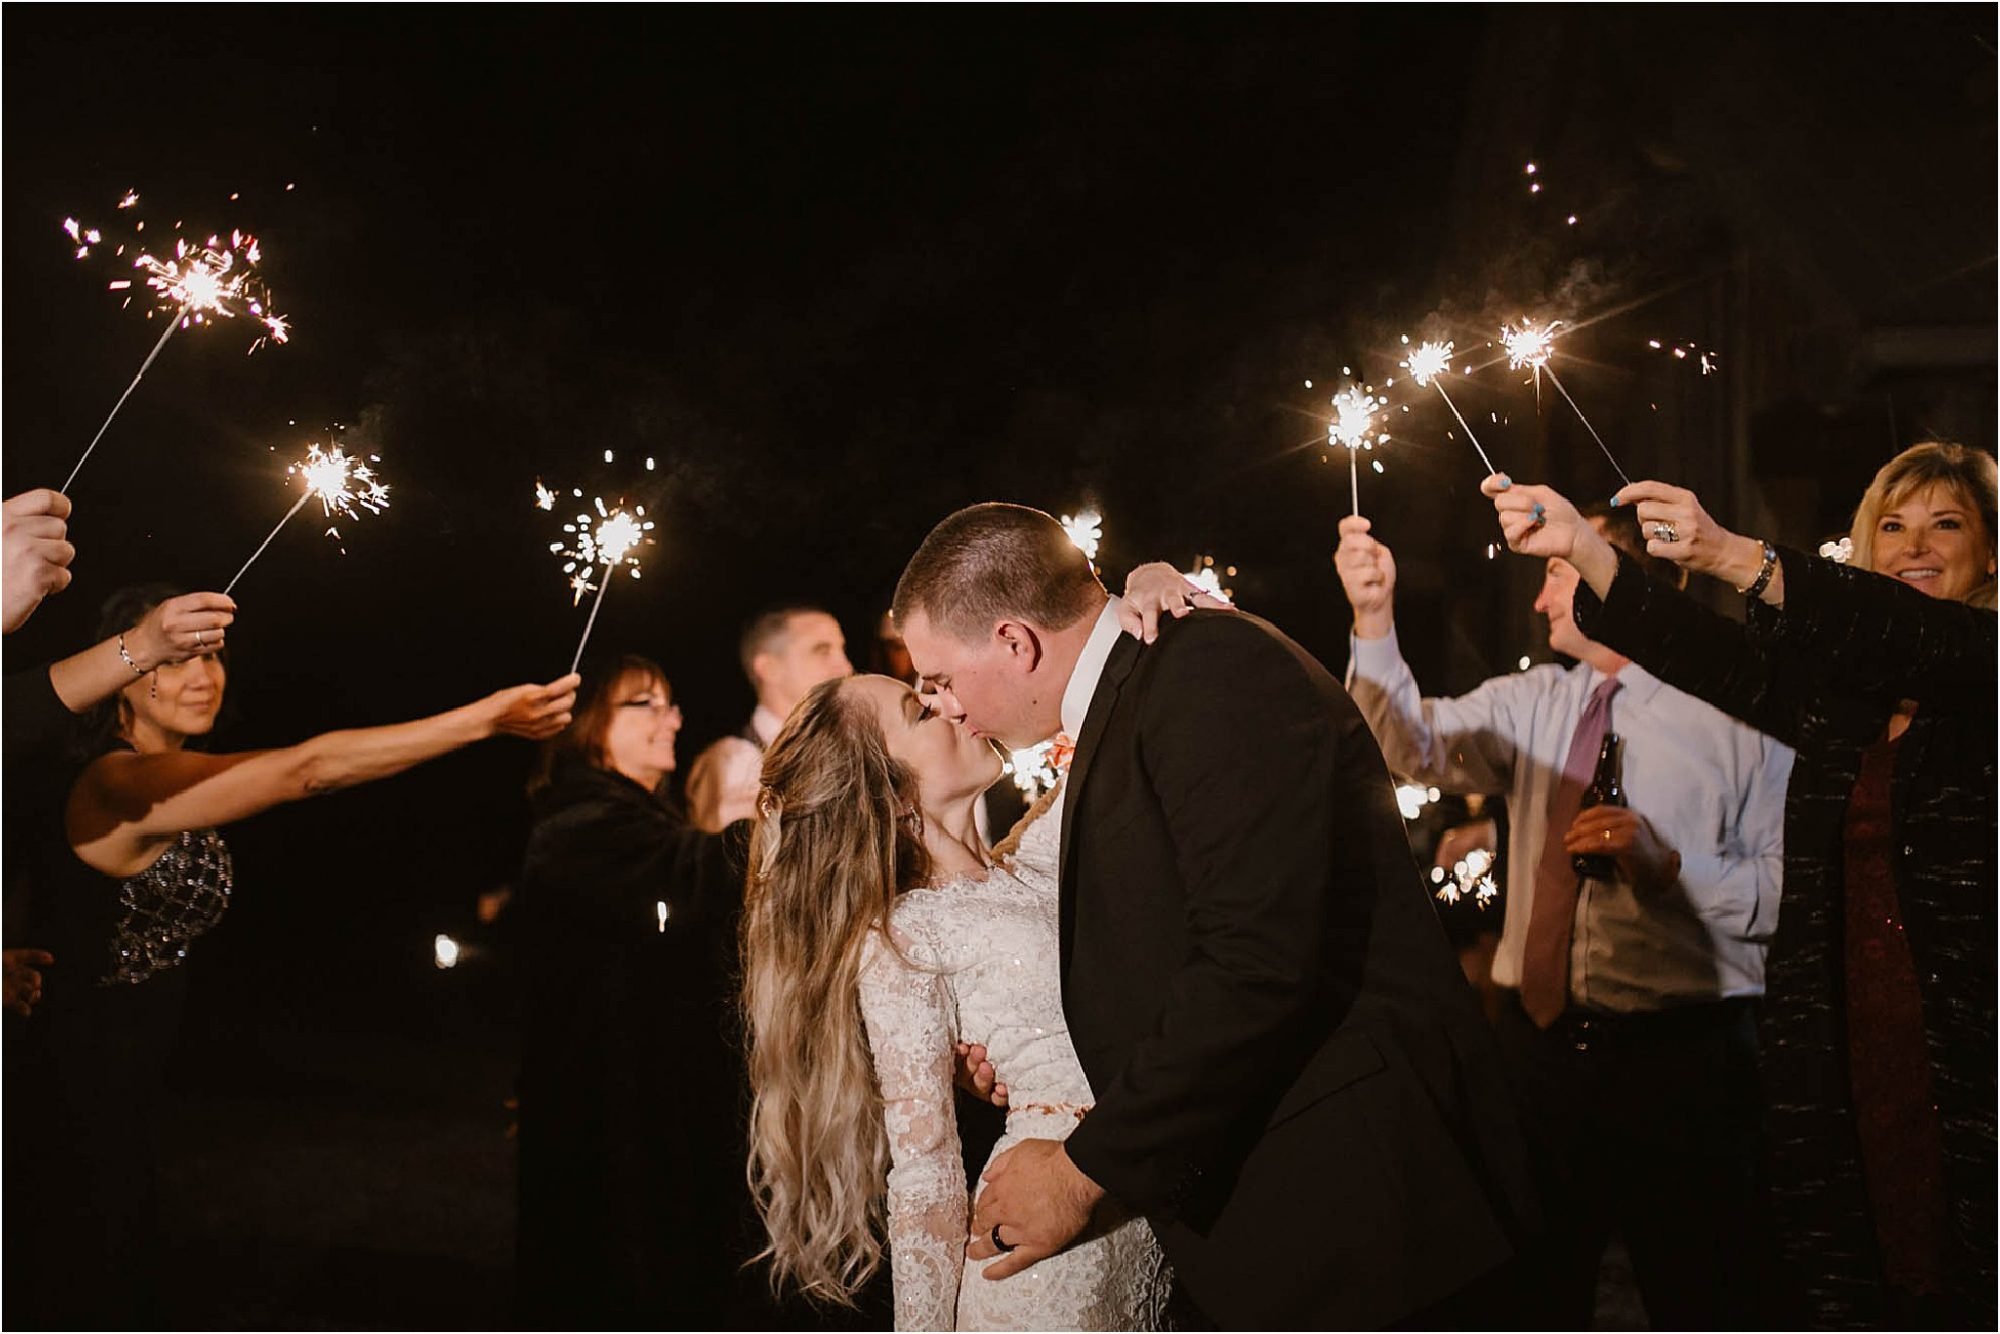 sparkler exit photos at wedding reception